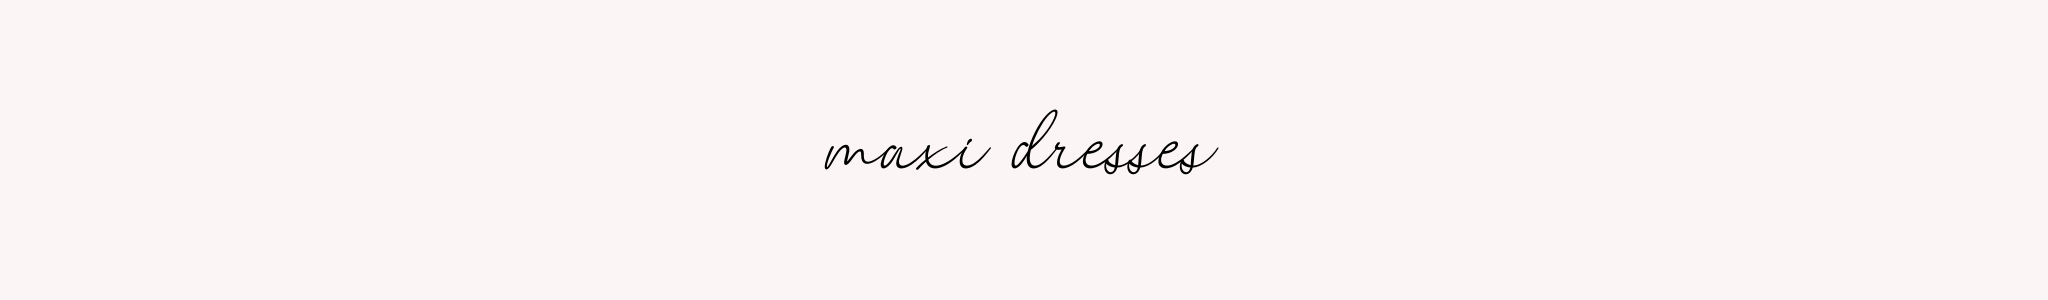 MAXI DRESSES